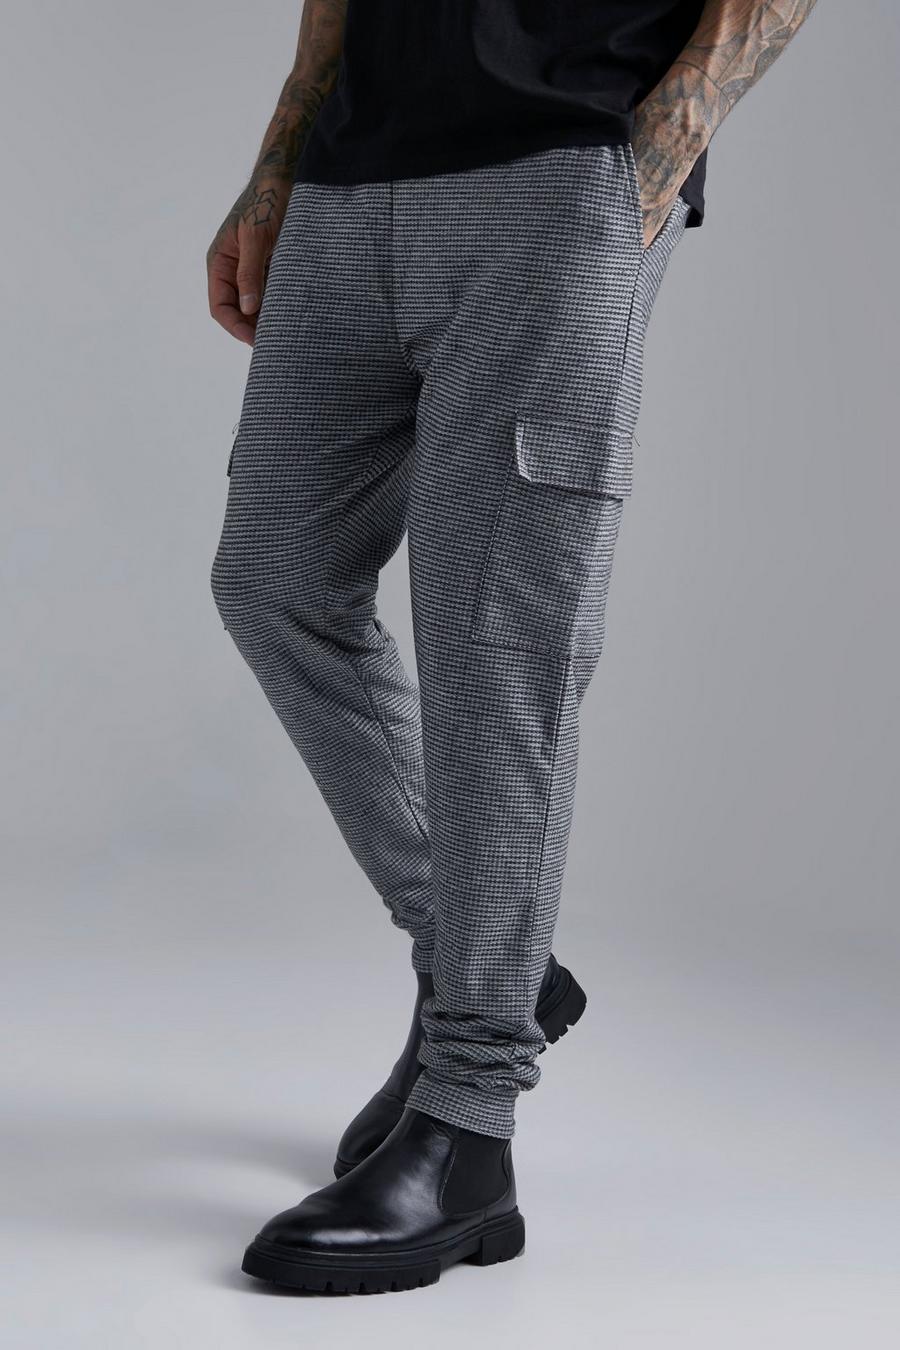 Pantaloni tuta Cargo Tall Smart in jacquard con polsini alle caviglie, Dark grey gris